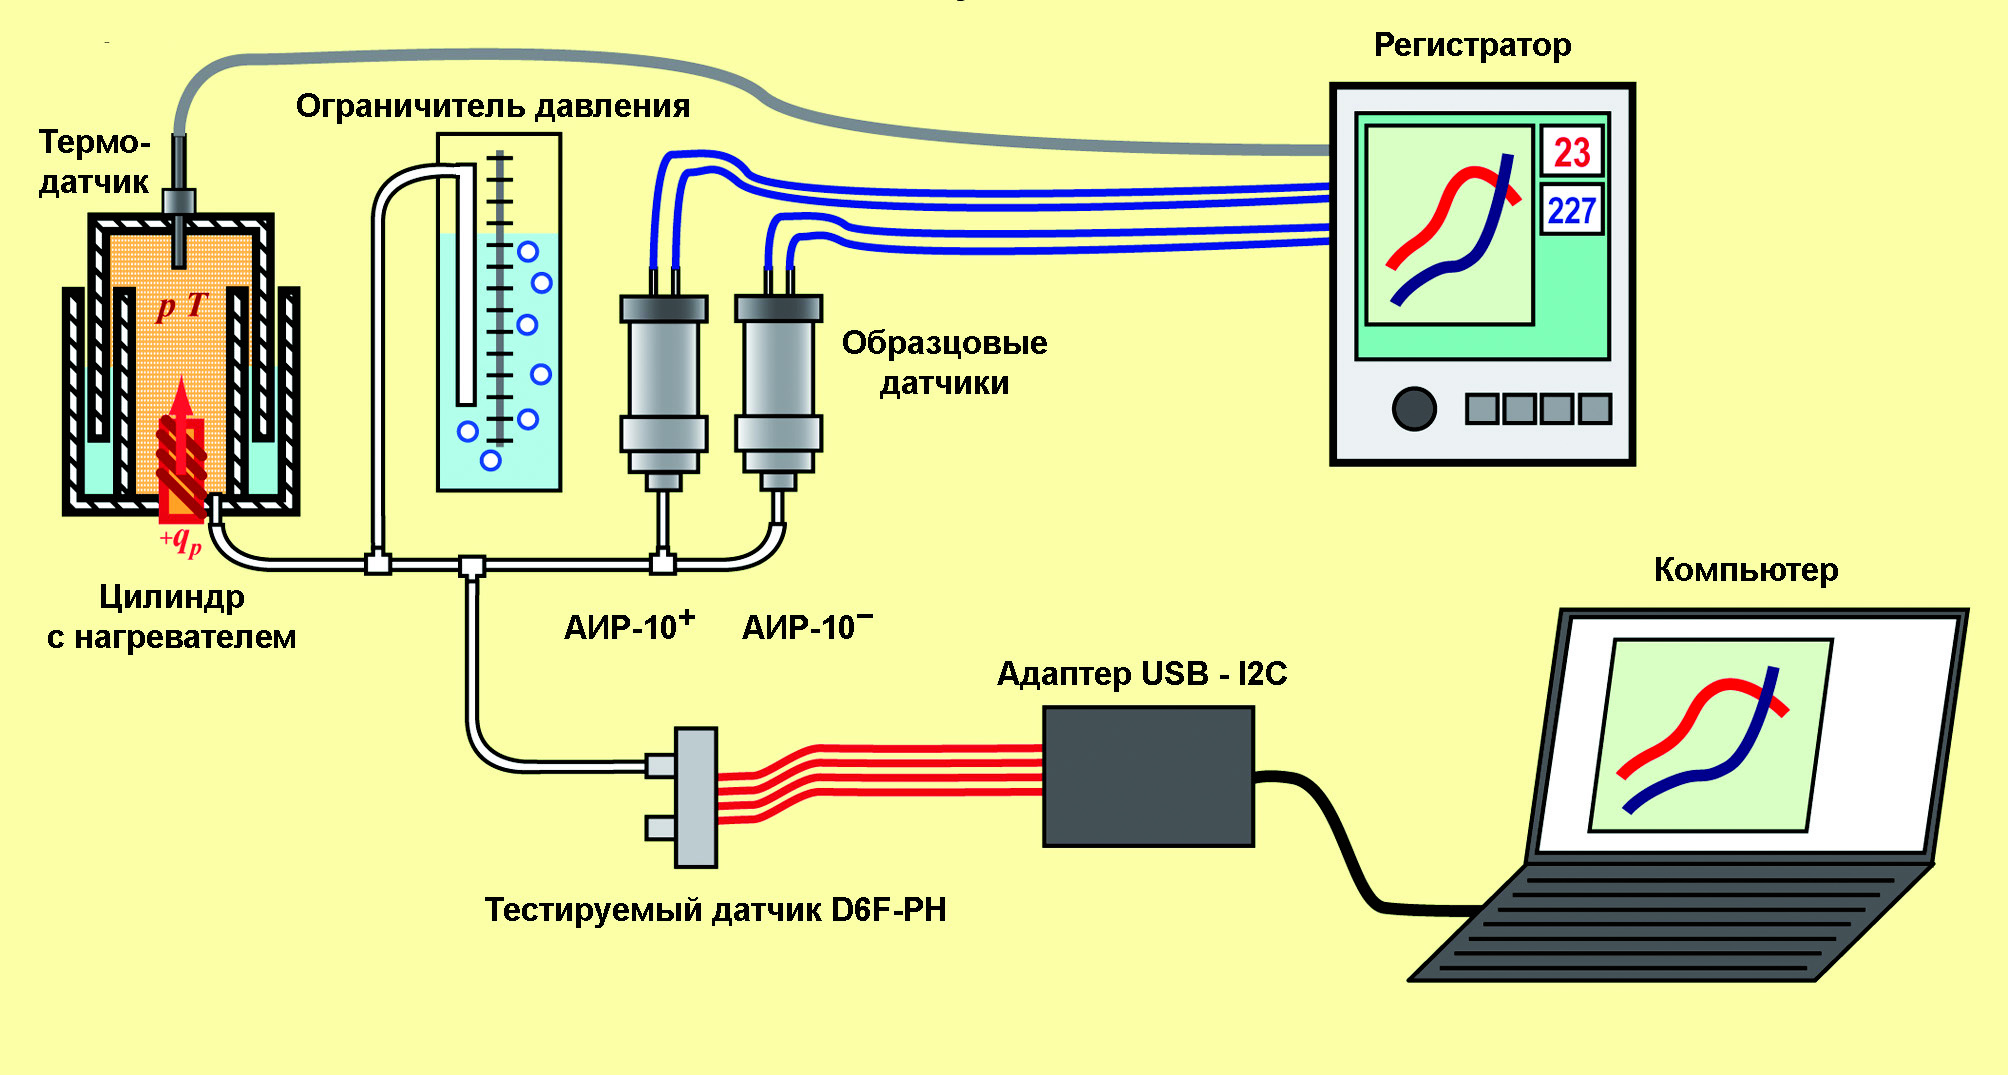 Рис. 9. Схема лабораторной установки при испытании датчика D6F–PH в условиях статического давления